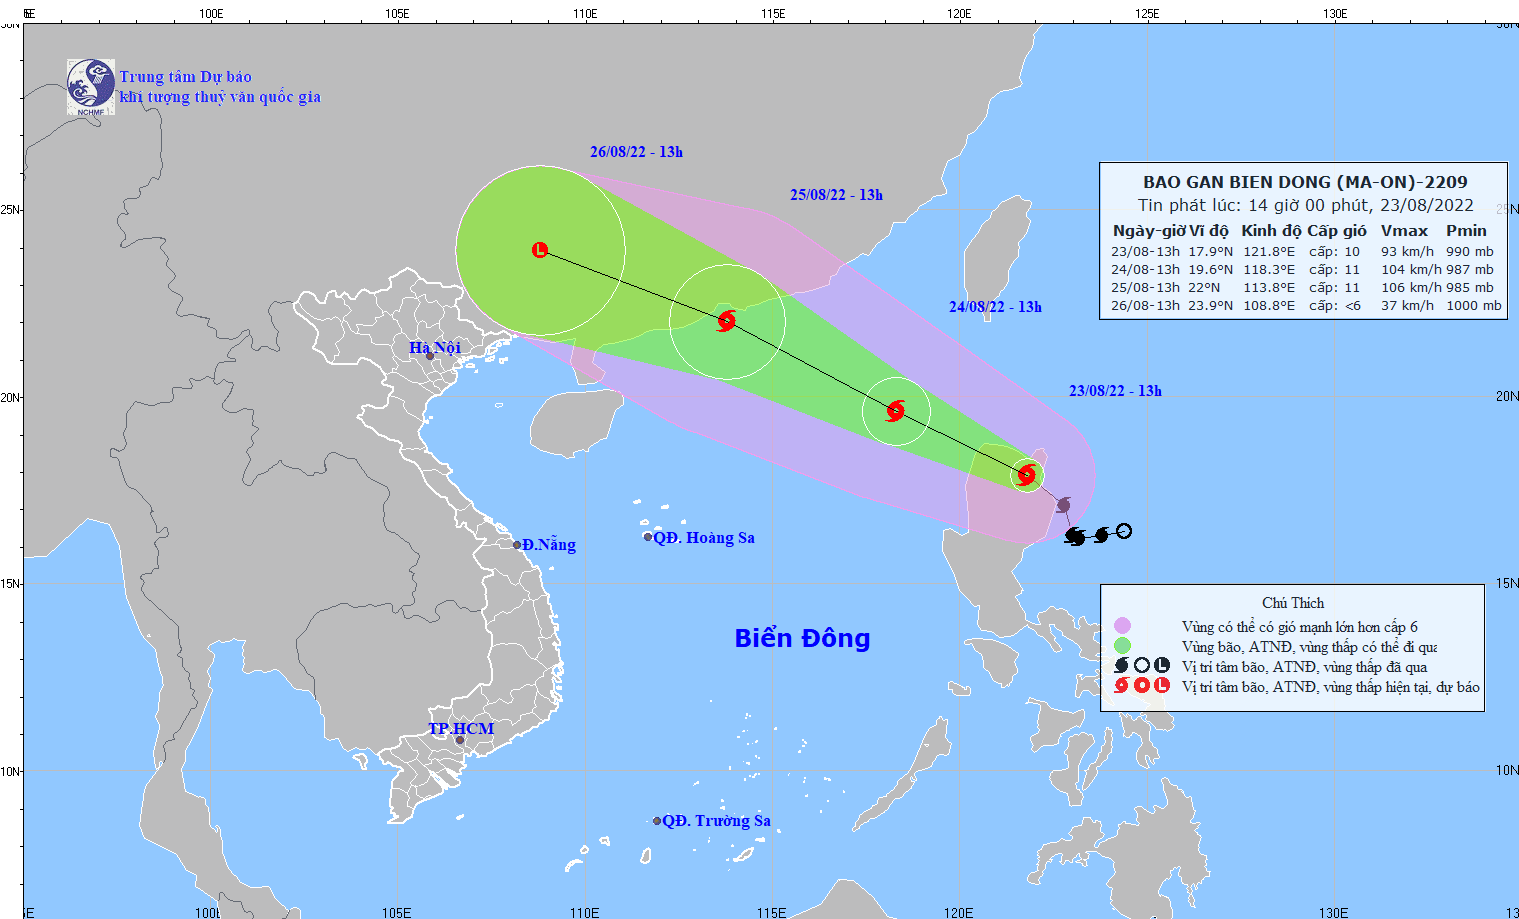 Bão Ma-on sắp gây gió mạnh, sóng lớn ở Biển Đông, quần đảo Hoàng Sa gió giật đến cấp 13 - Ảnh 2.